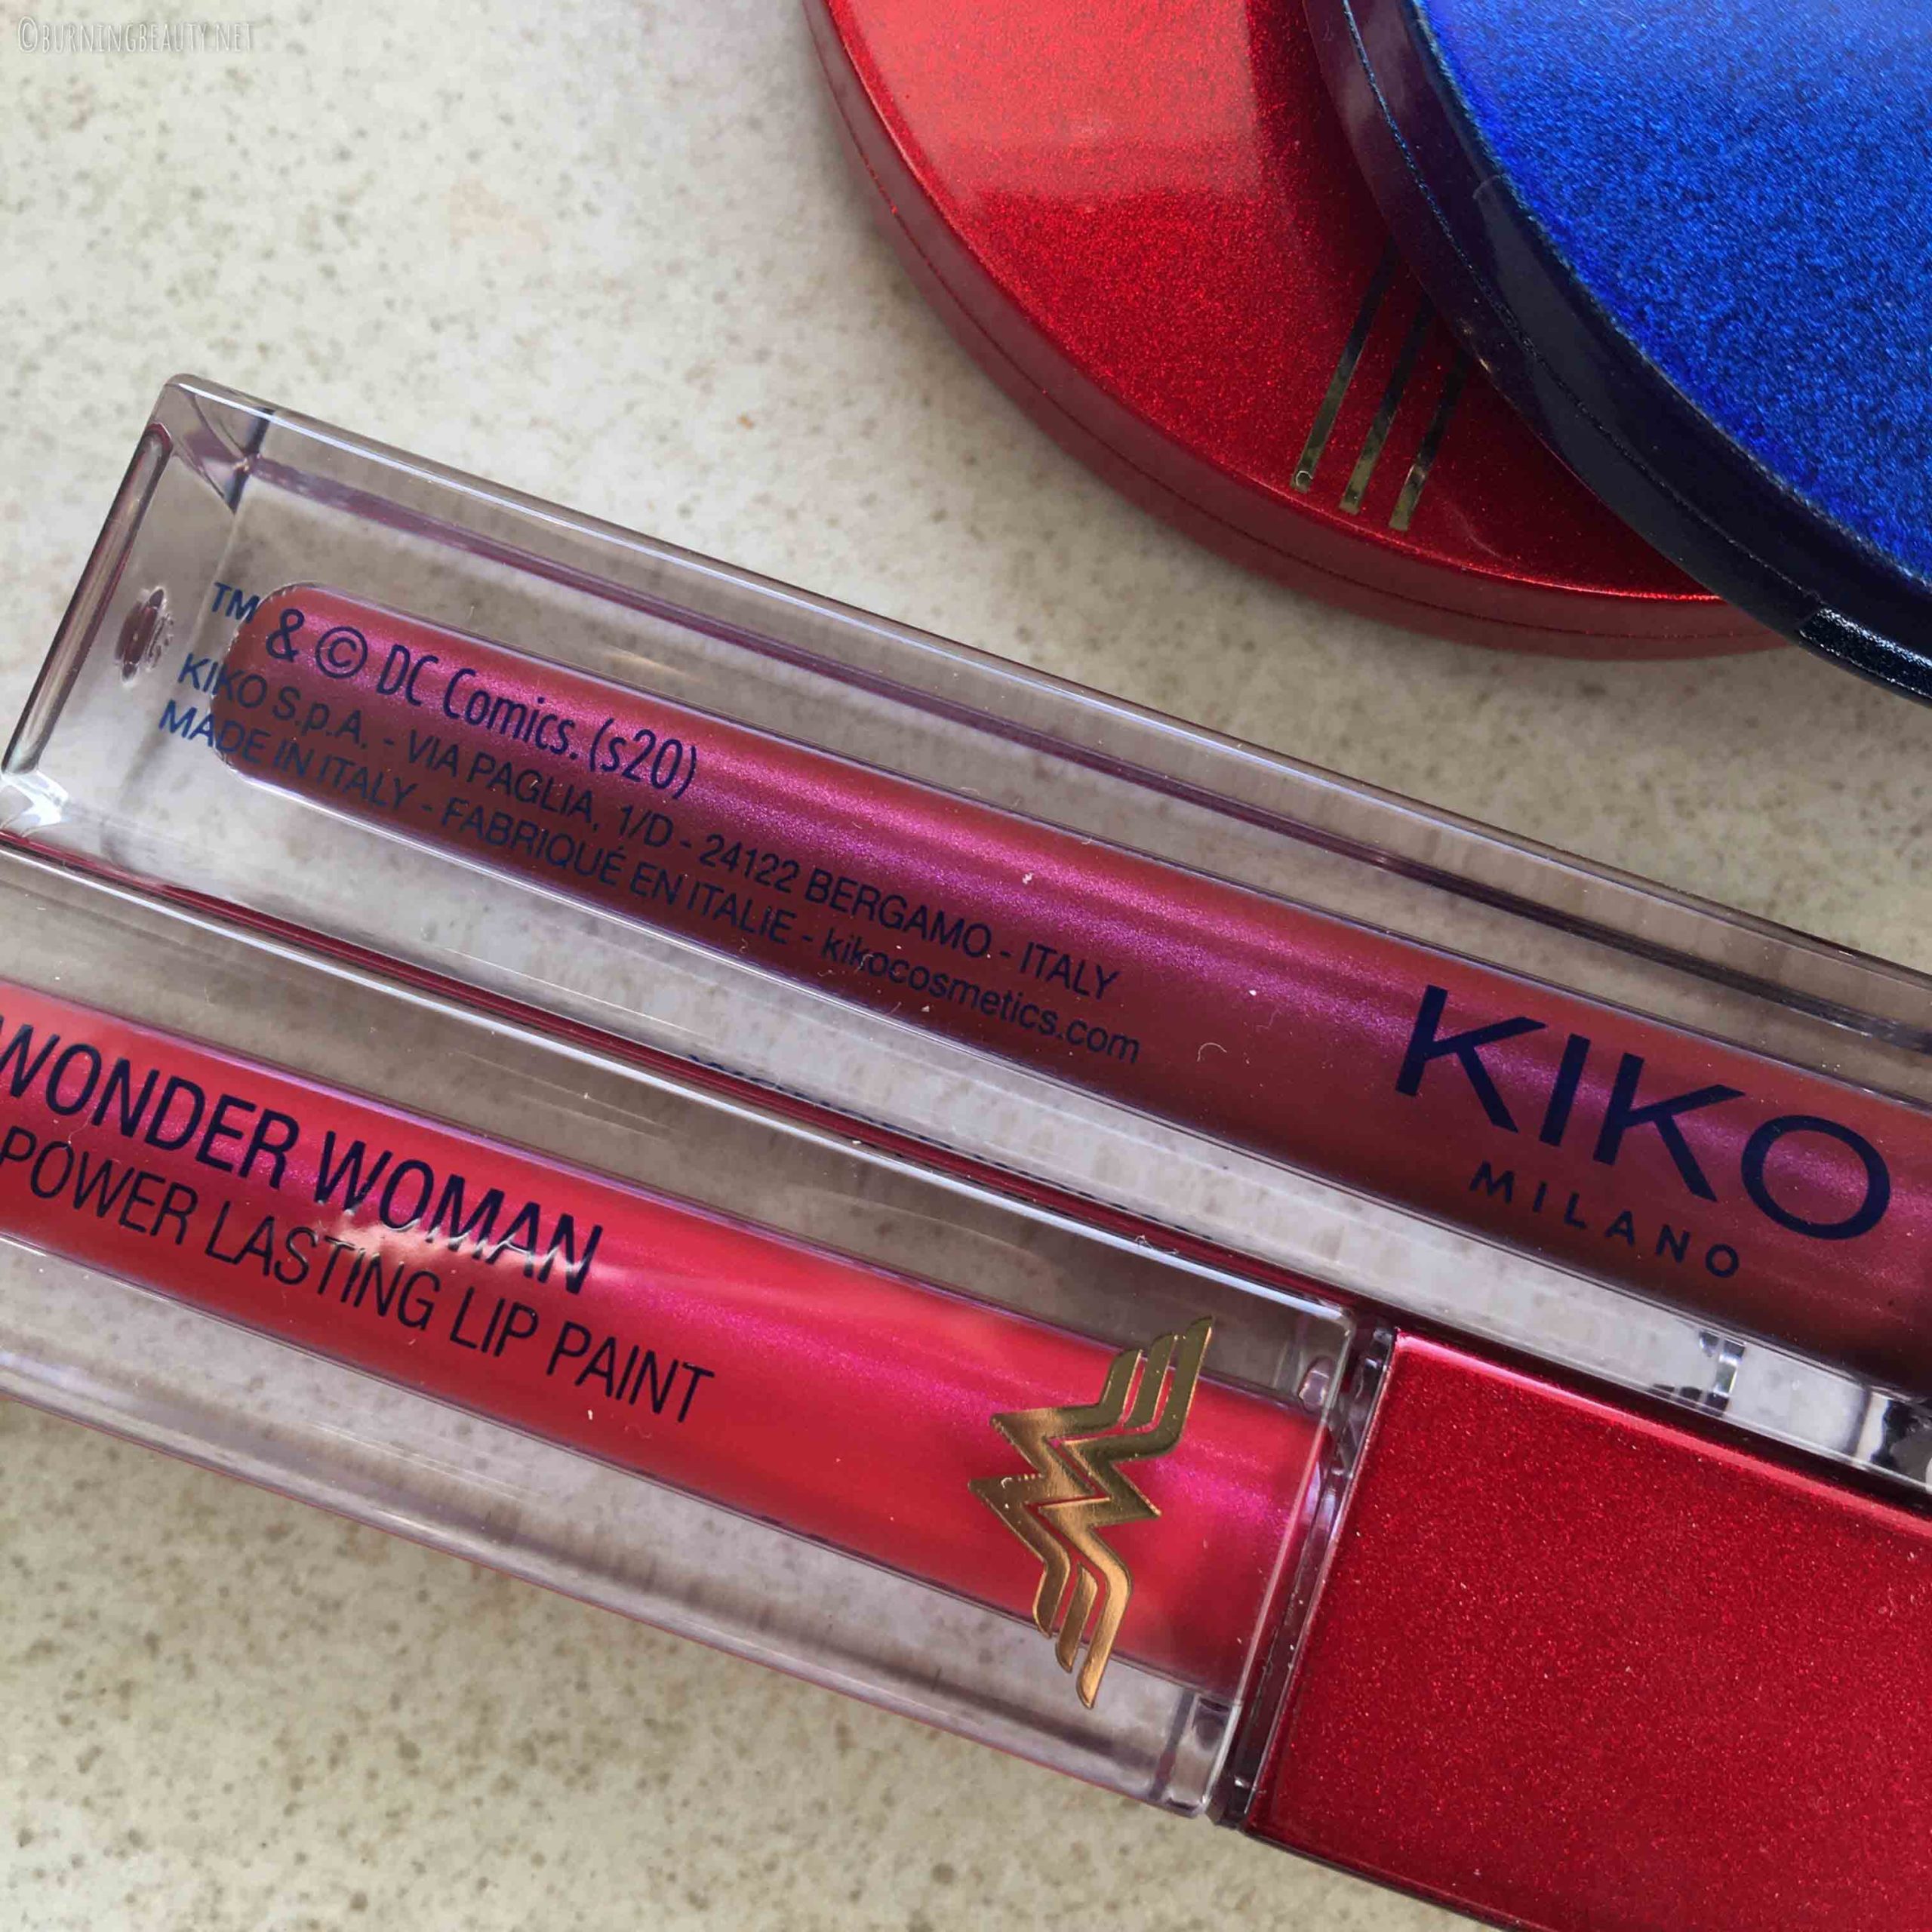 kiko wonder woman lip paint